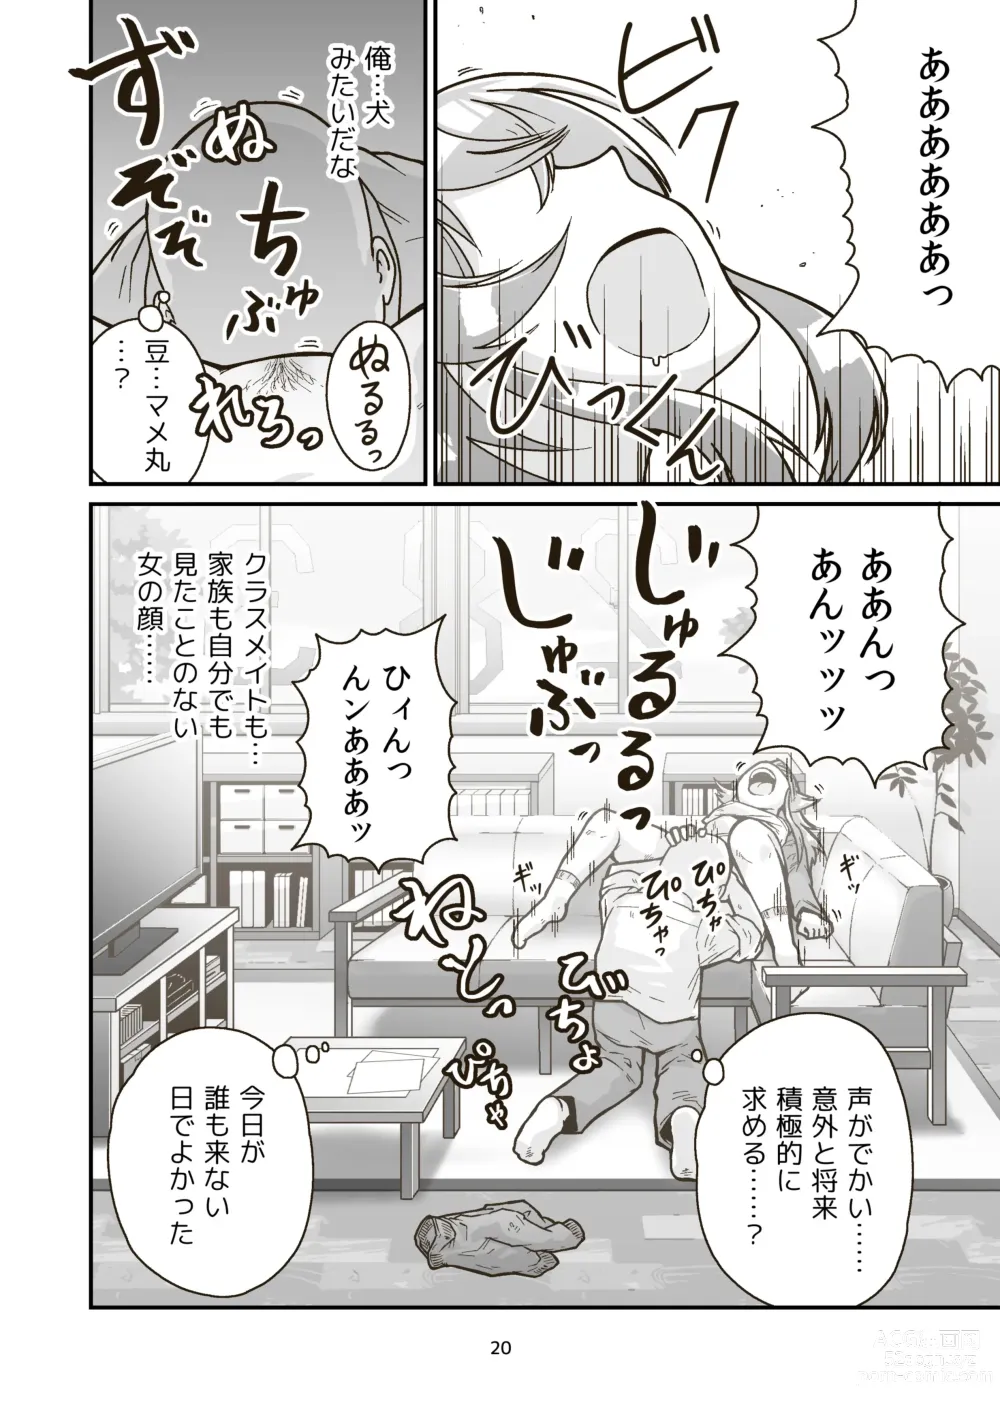 Page 19 of doujinshi Nichiyou Asa kara Climax